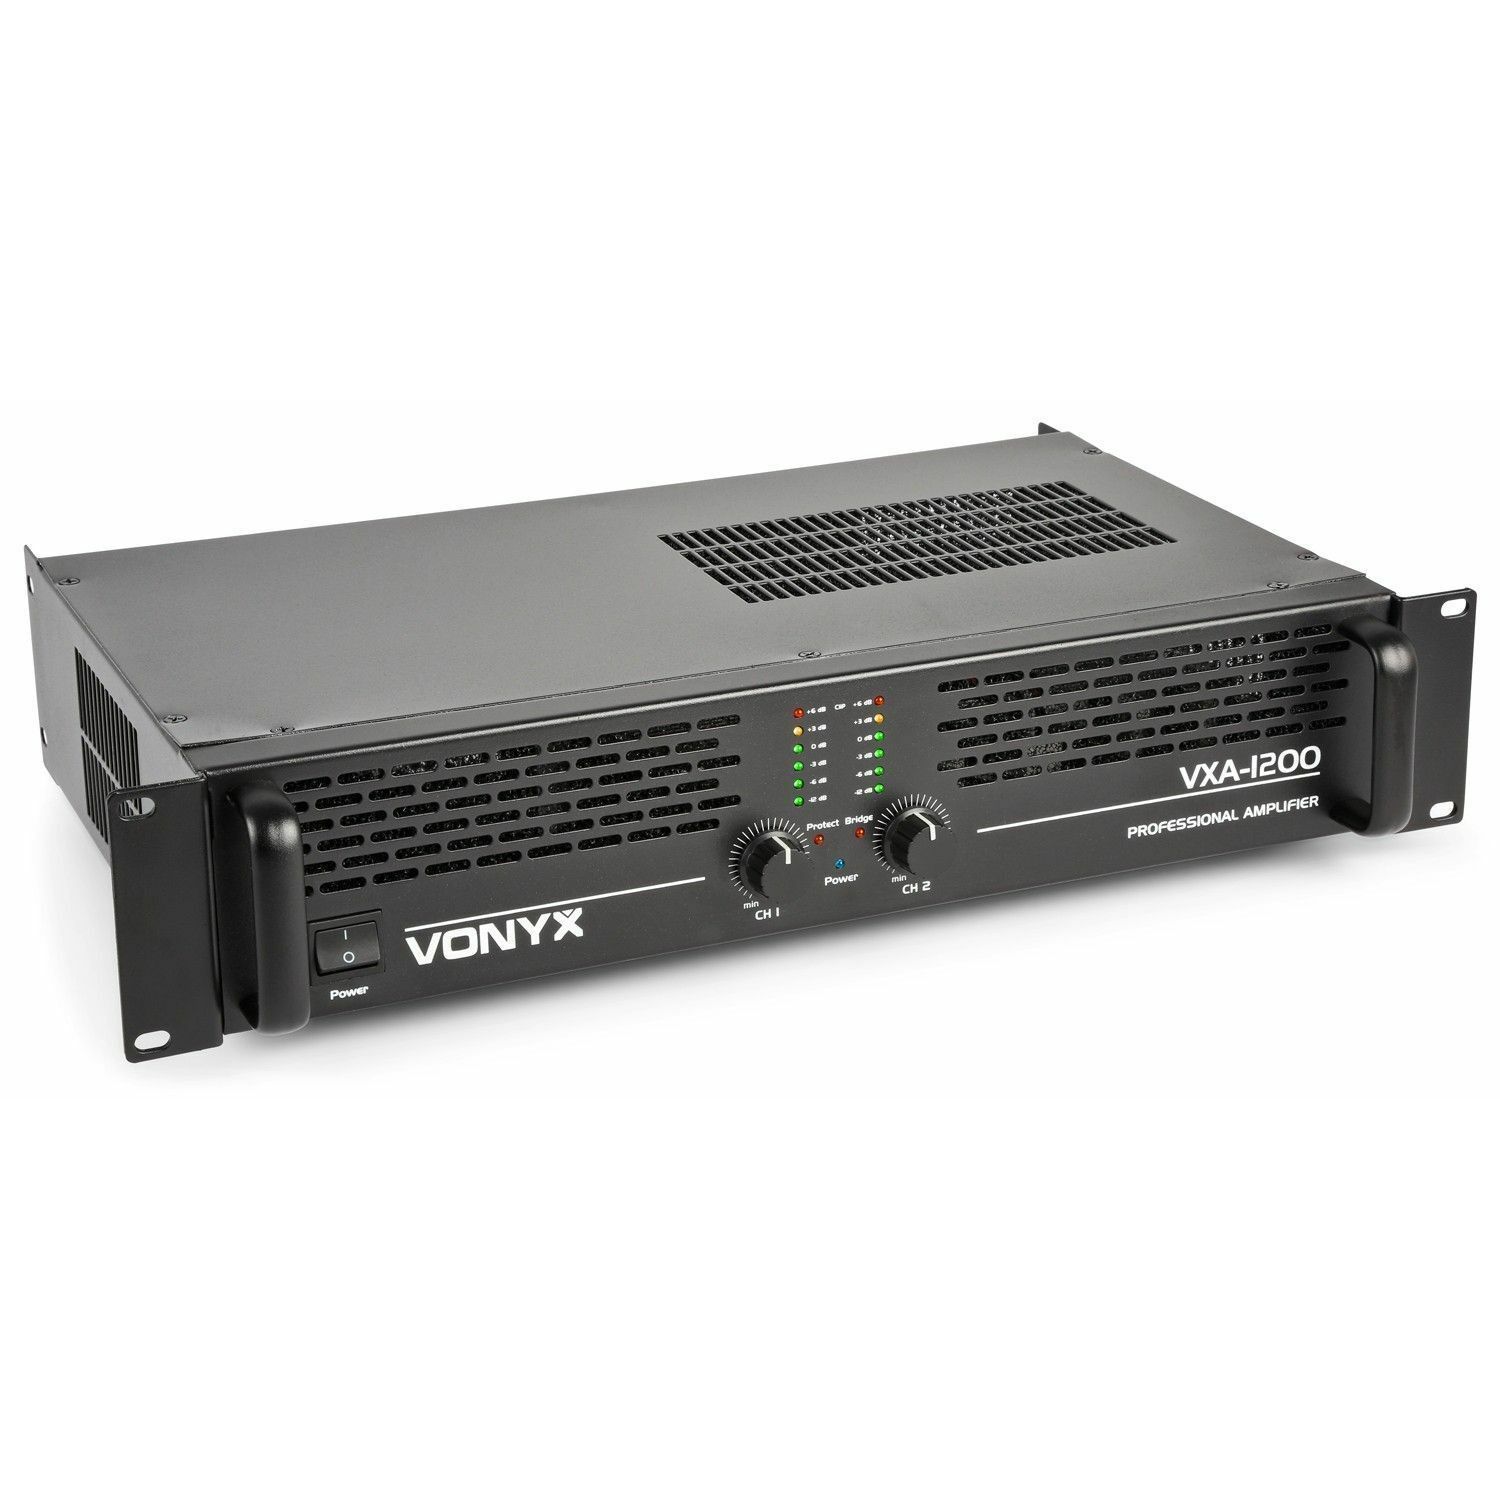 Retourdeal - Vonyx VXA-1200 PA versterker 2x 600W met Brugschakeling